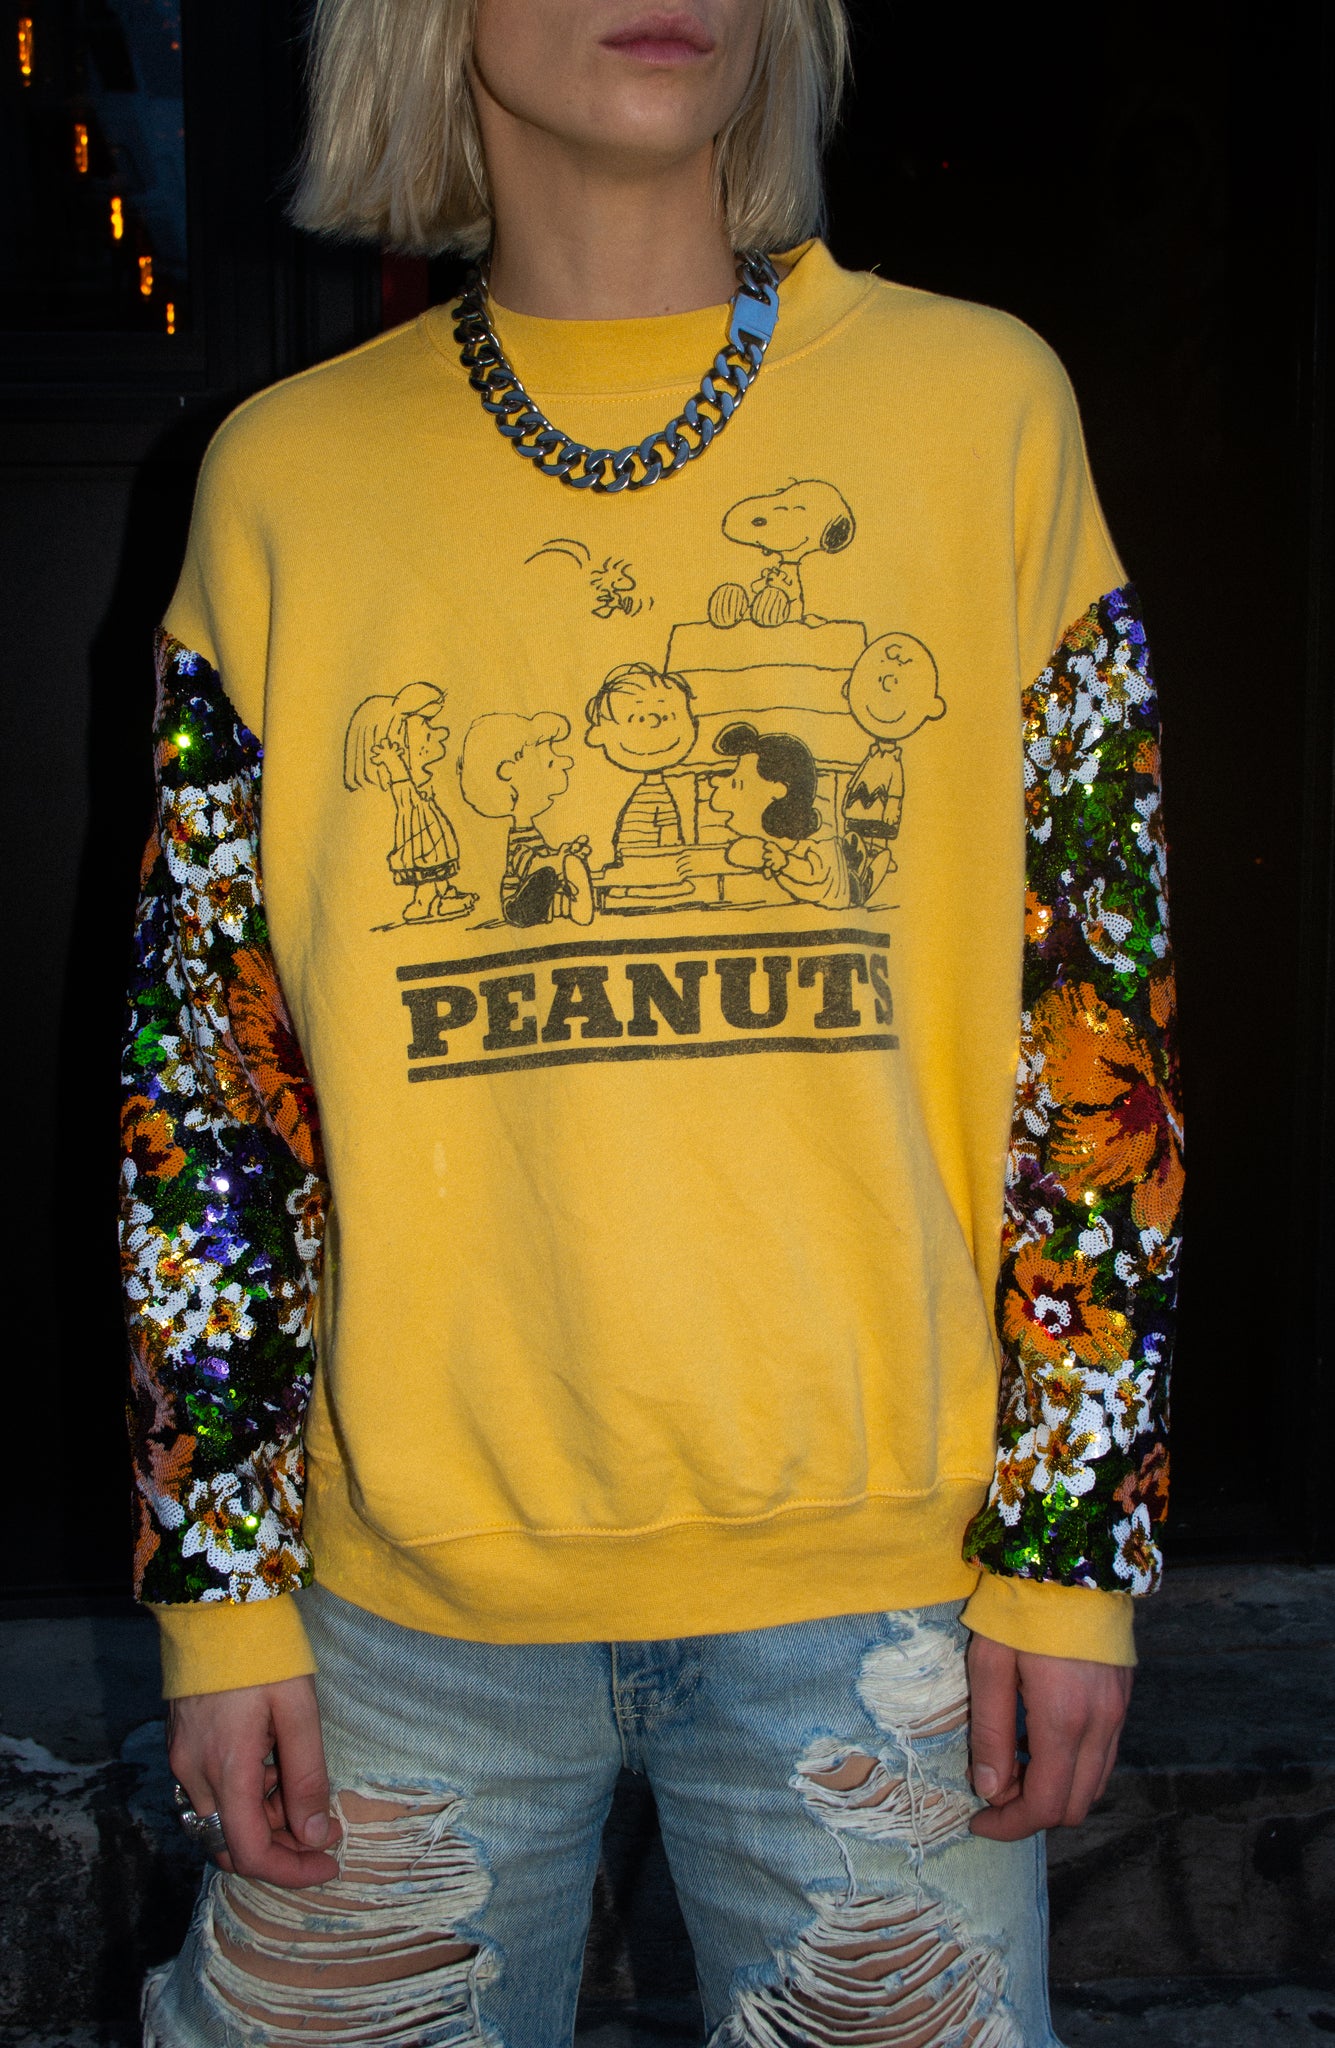 Peanuts OG Remix